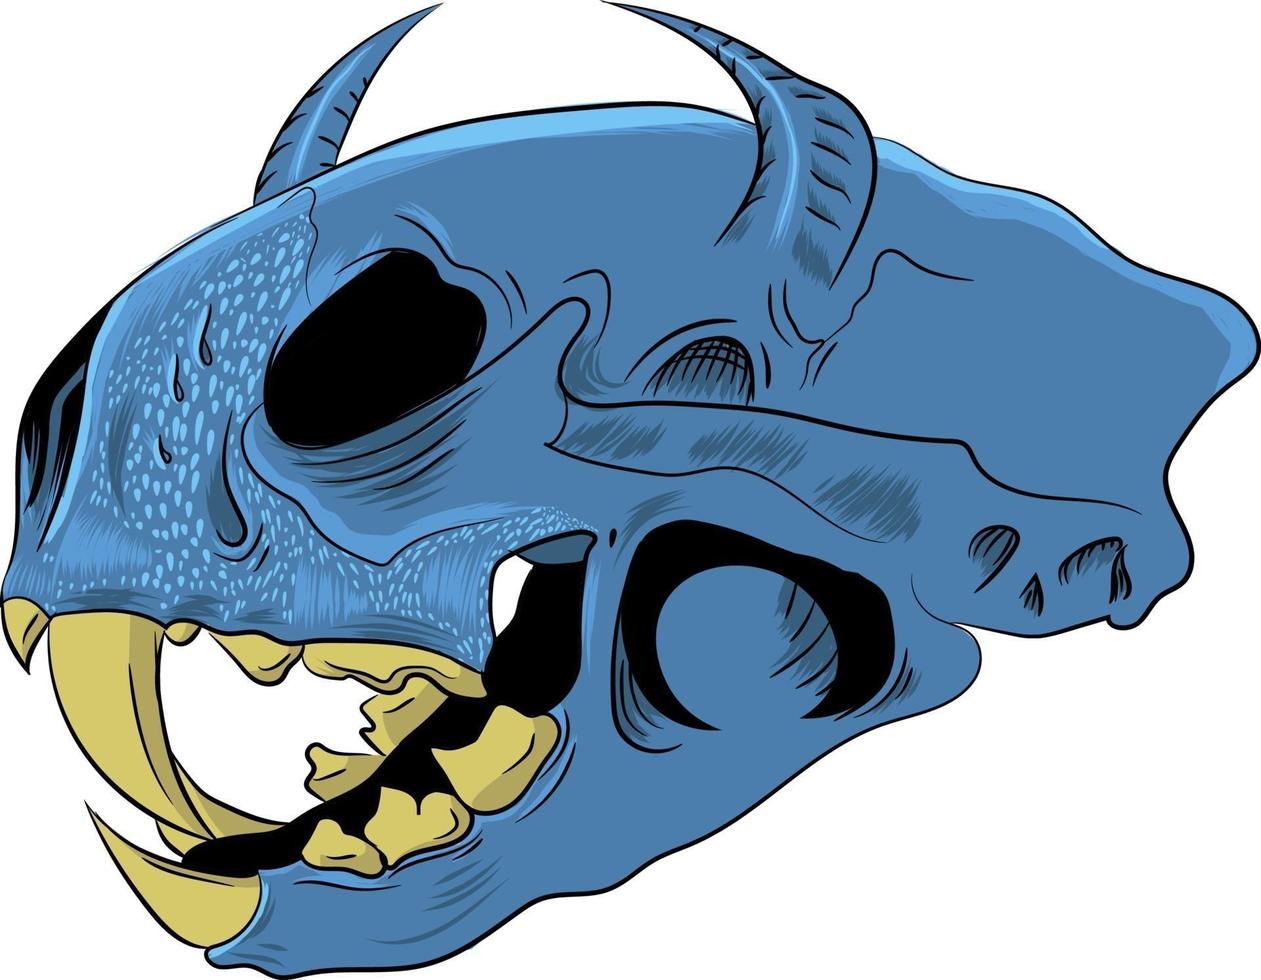 Skull animal vector illustration